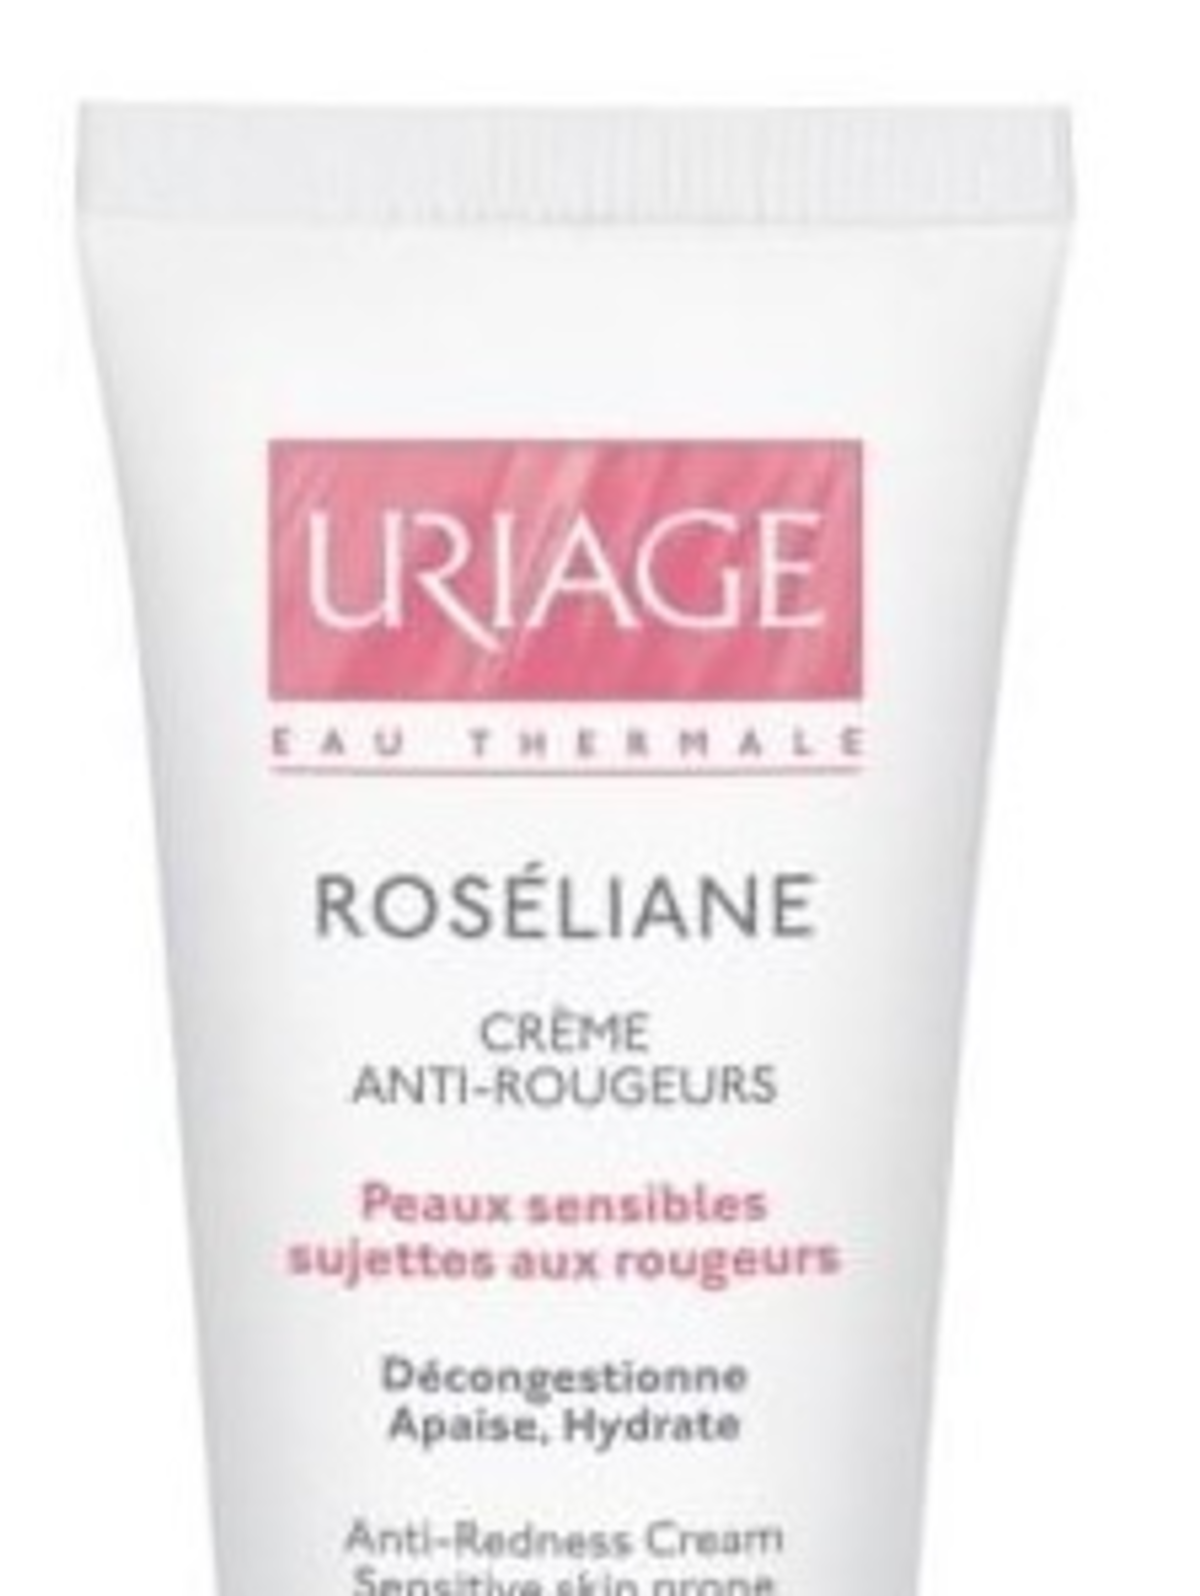 Uriage, Roseliane, Creme Anti-Rougeurs